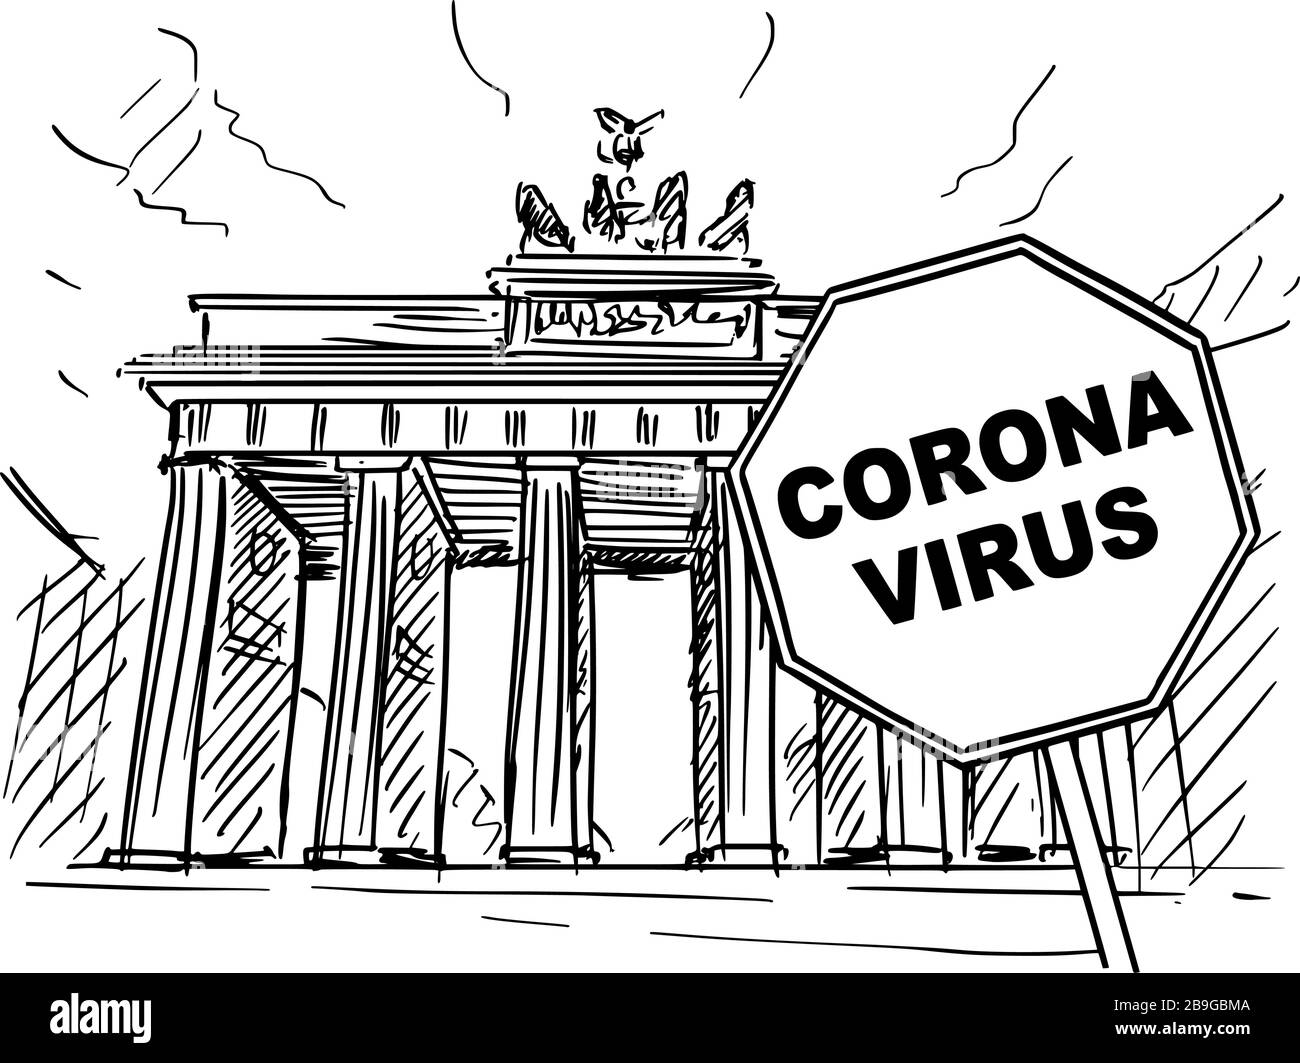 Vektor Cartoon Skizziert Grobe Darstellung Von Deutschland Berlin Brandenburger Tor Und Coronavirus Kovid 19 Virus Epidemie Warnzeichen Stock Vektorgrafik Alamy